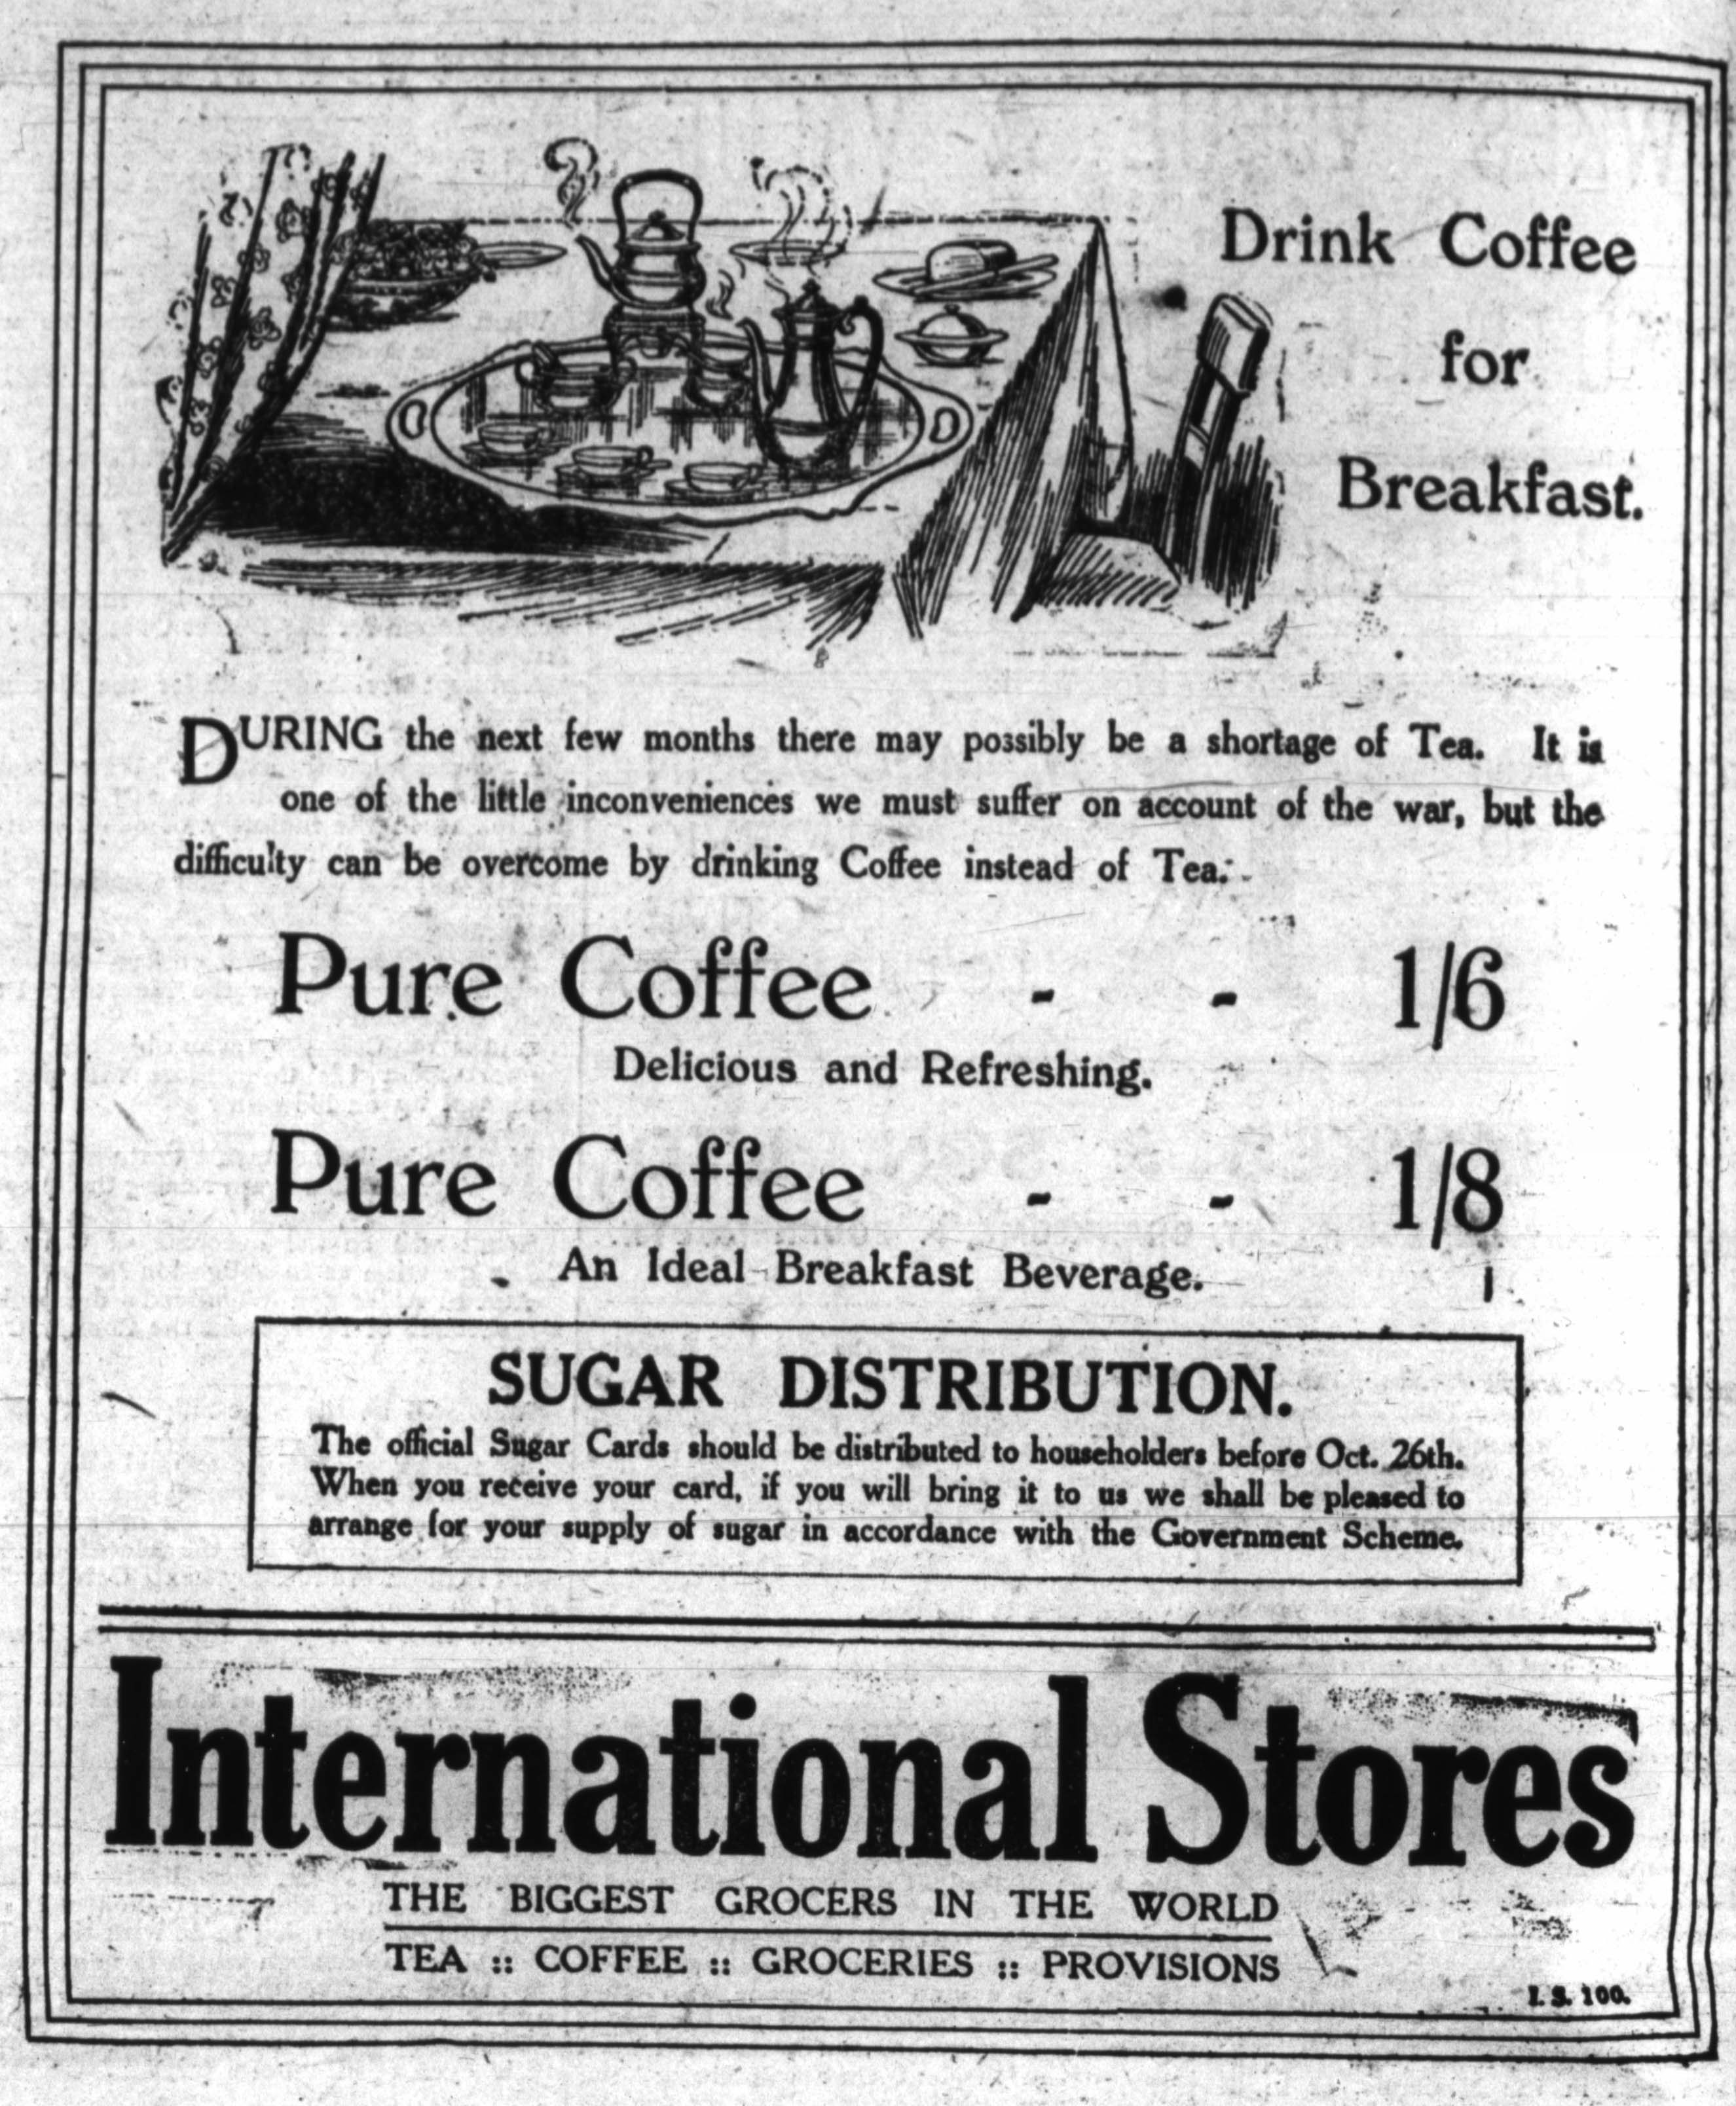 Drink Coffee for breakfast advert